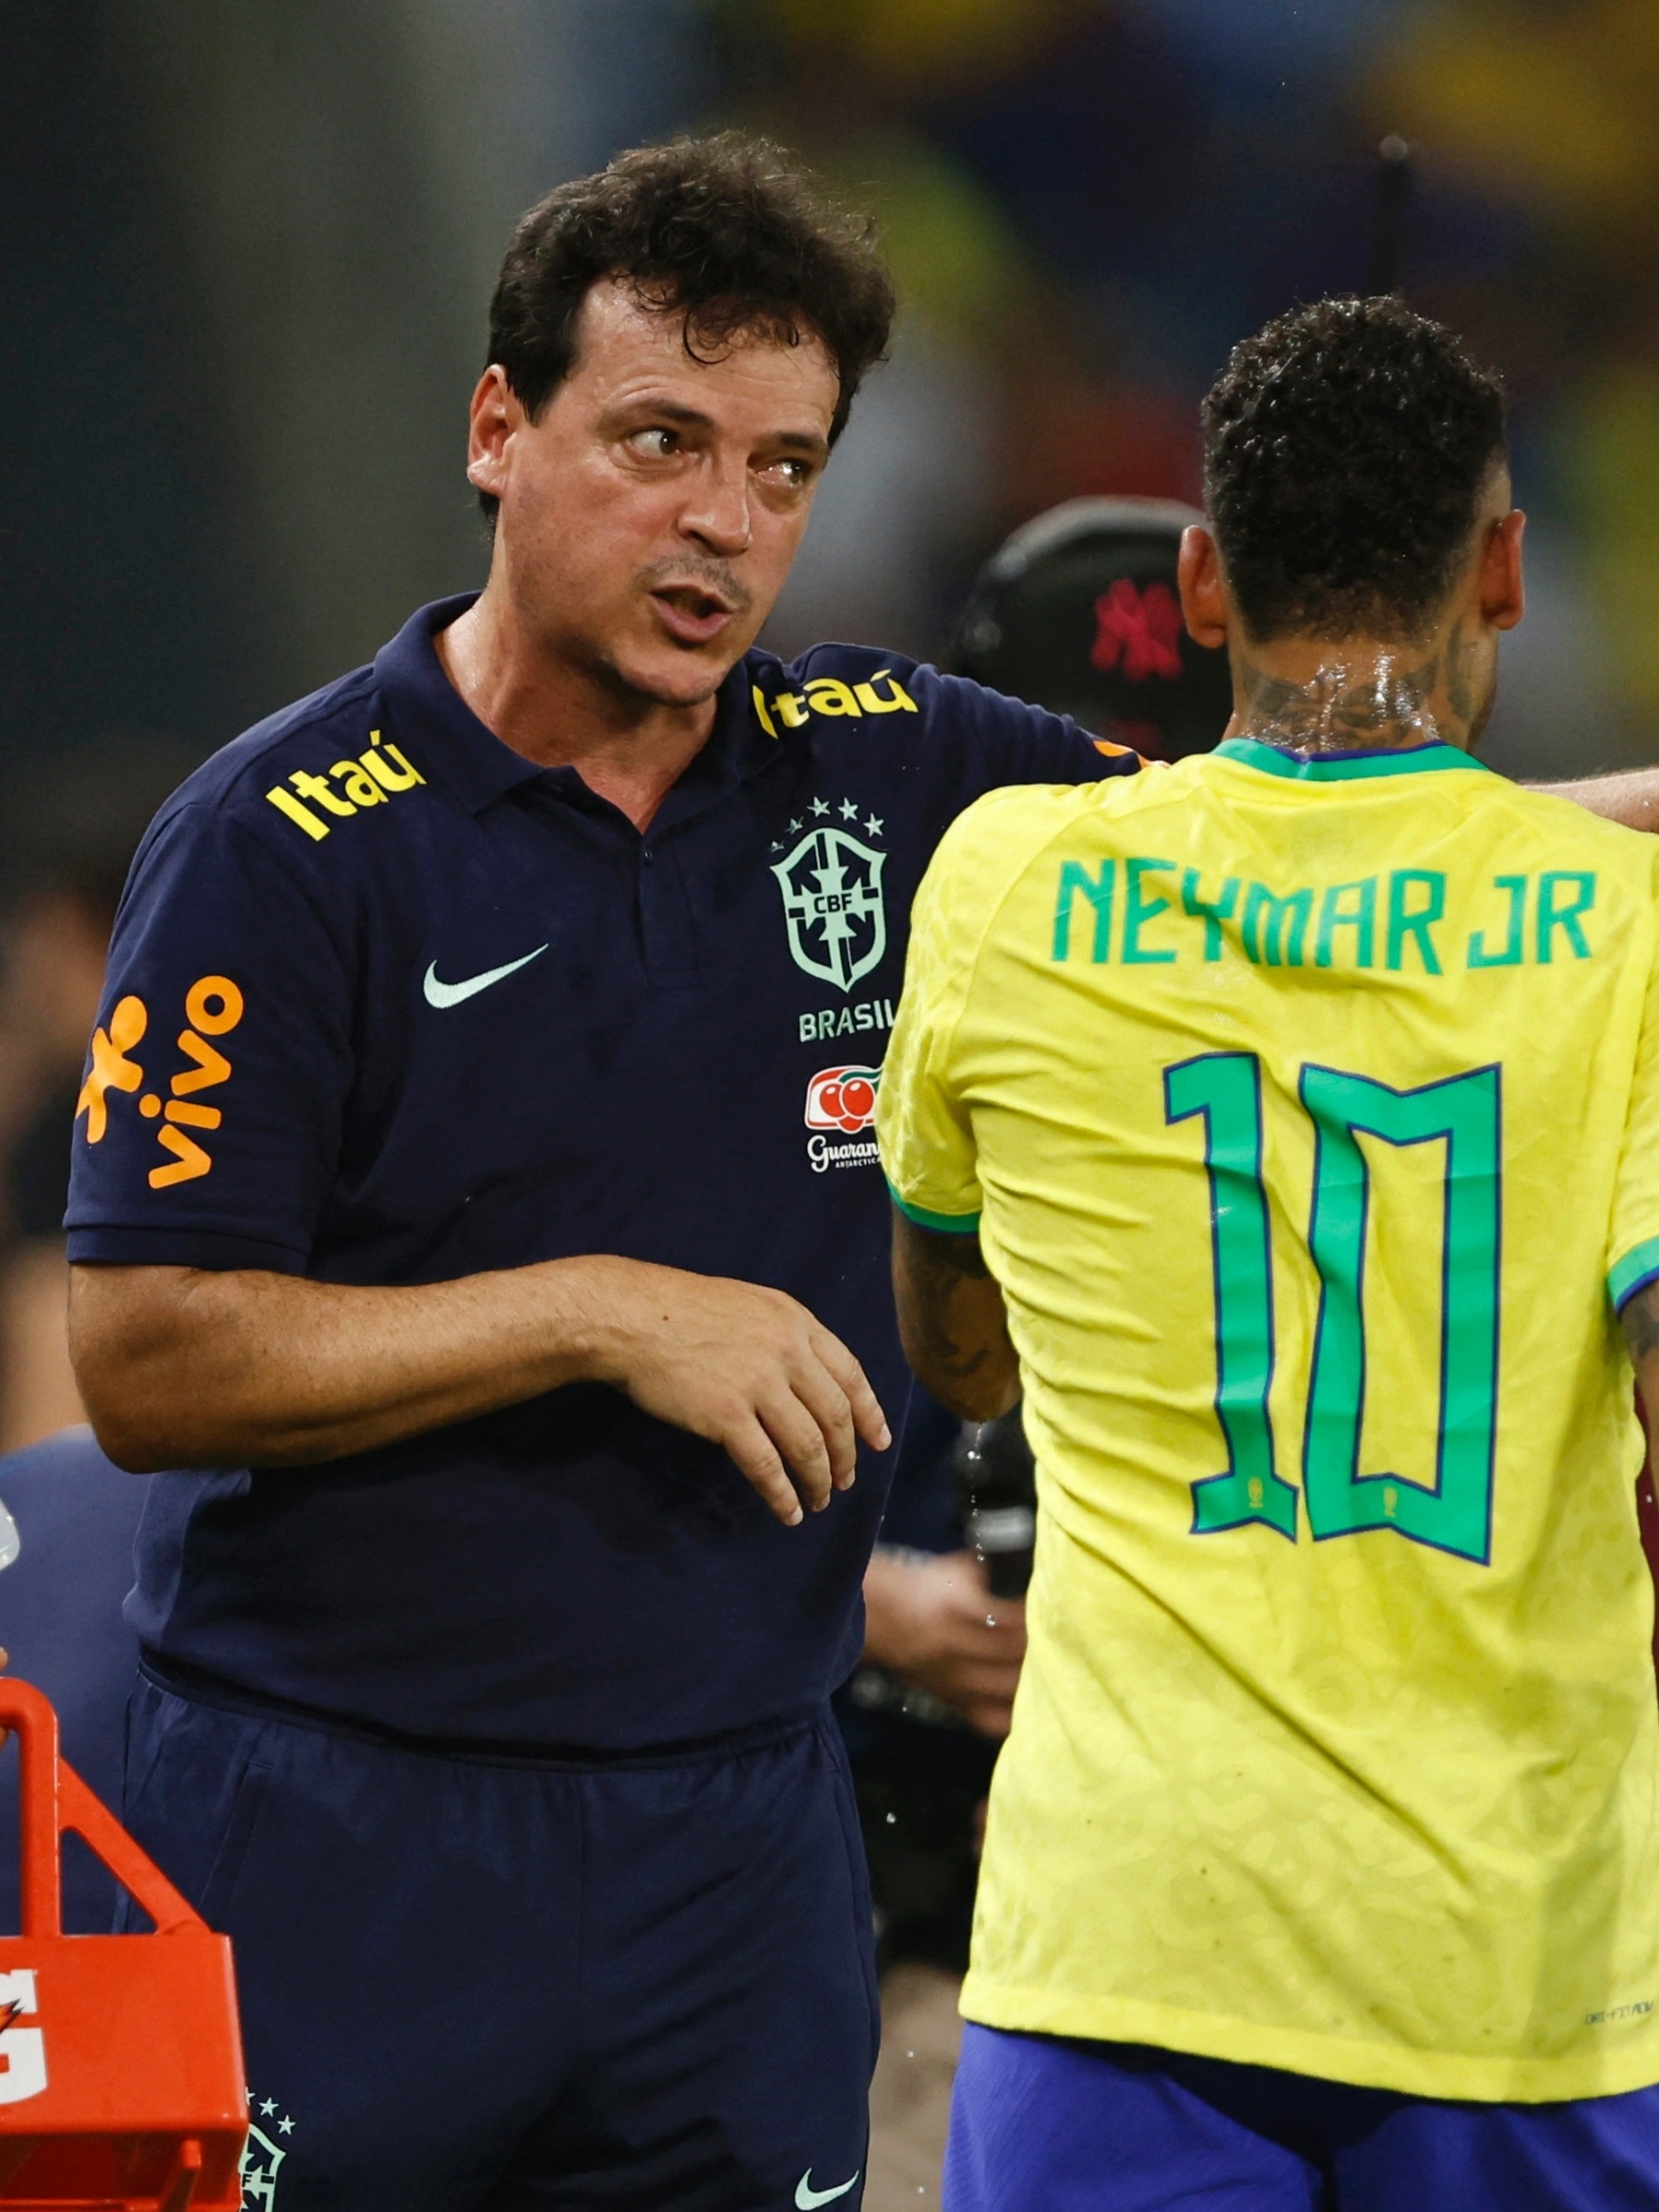 De Neymar a Diniz: como estava a seleção na última derrota nas eliminatórias  - ESPN